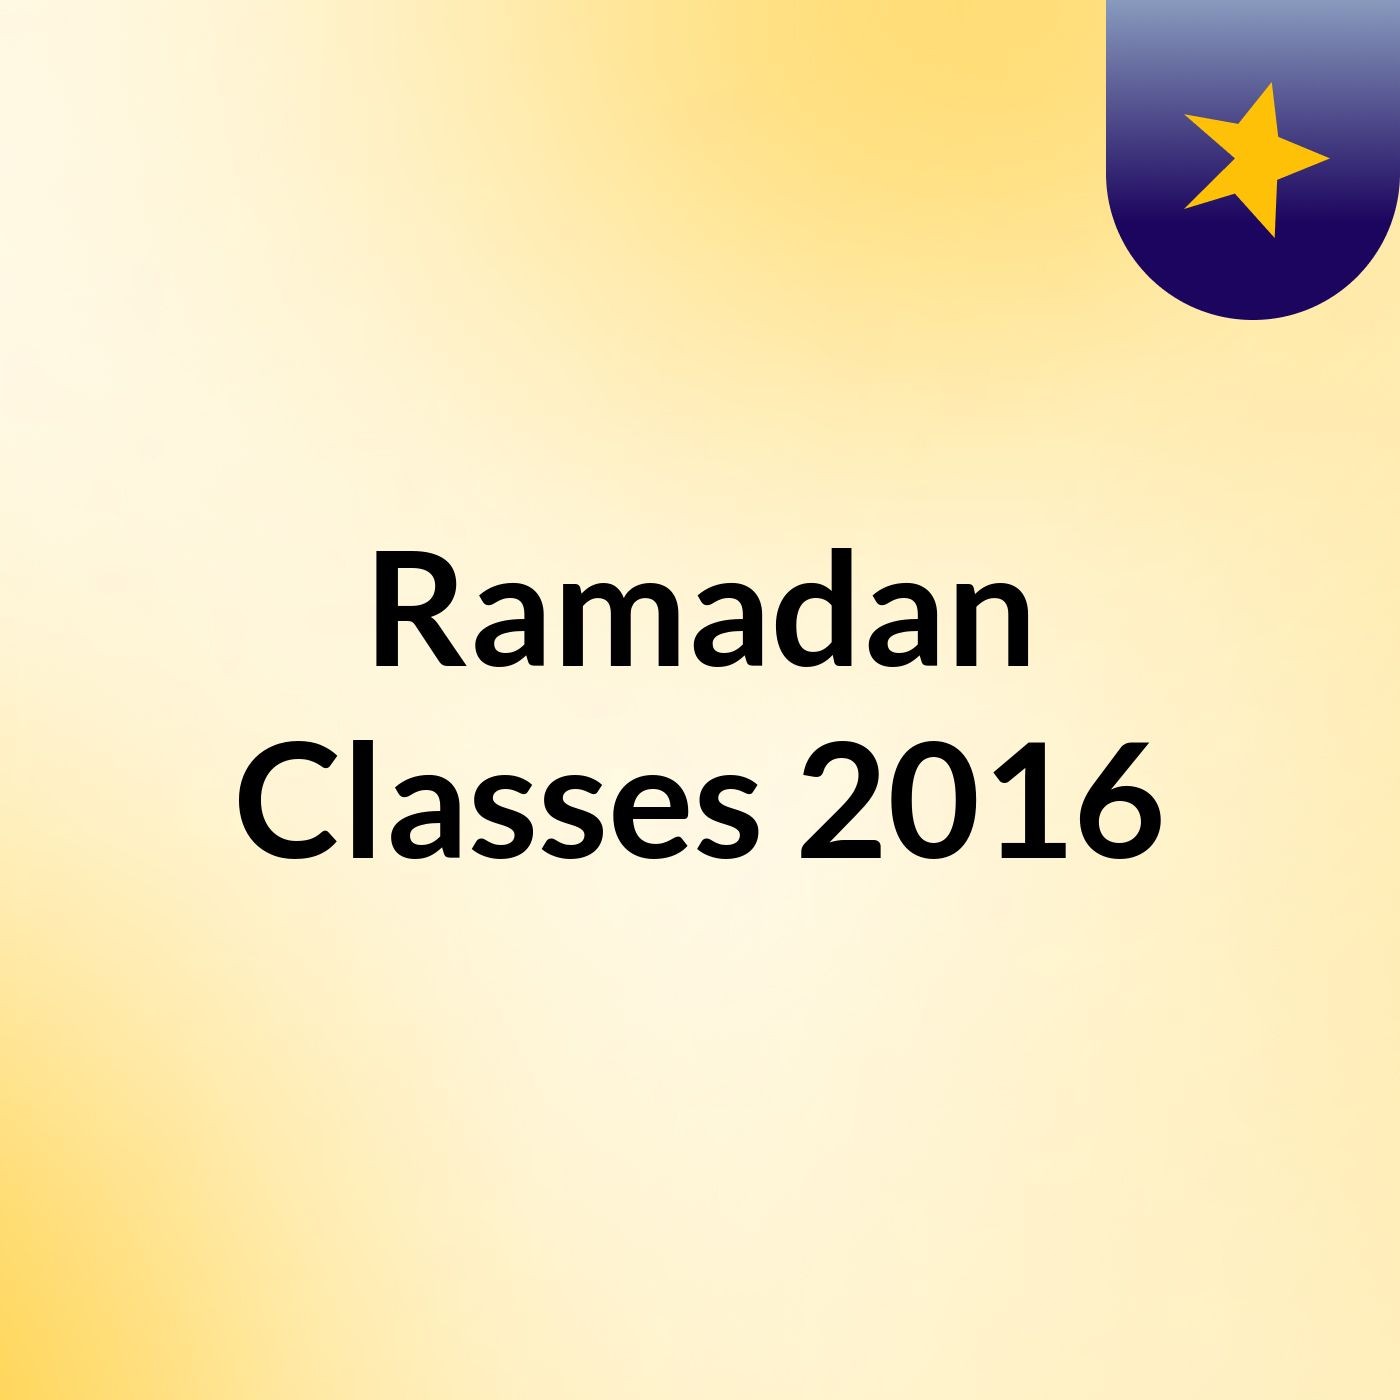 Ramadan Classes 2016